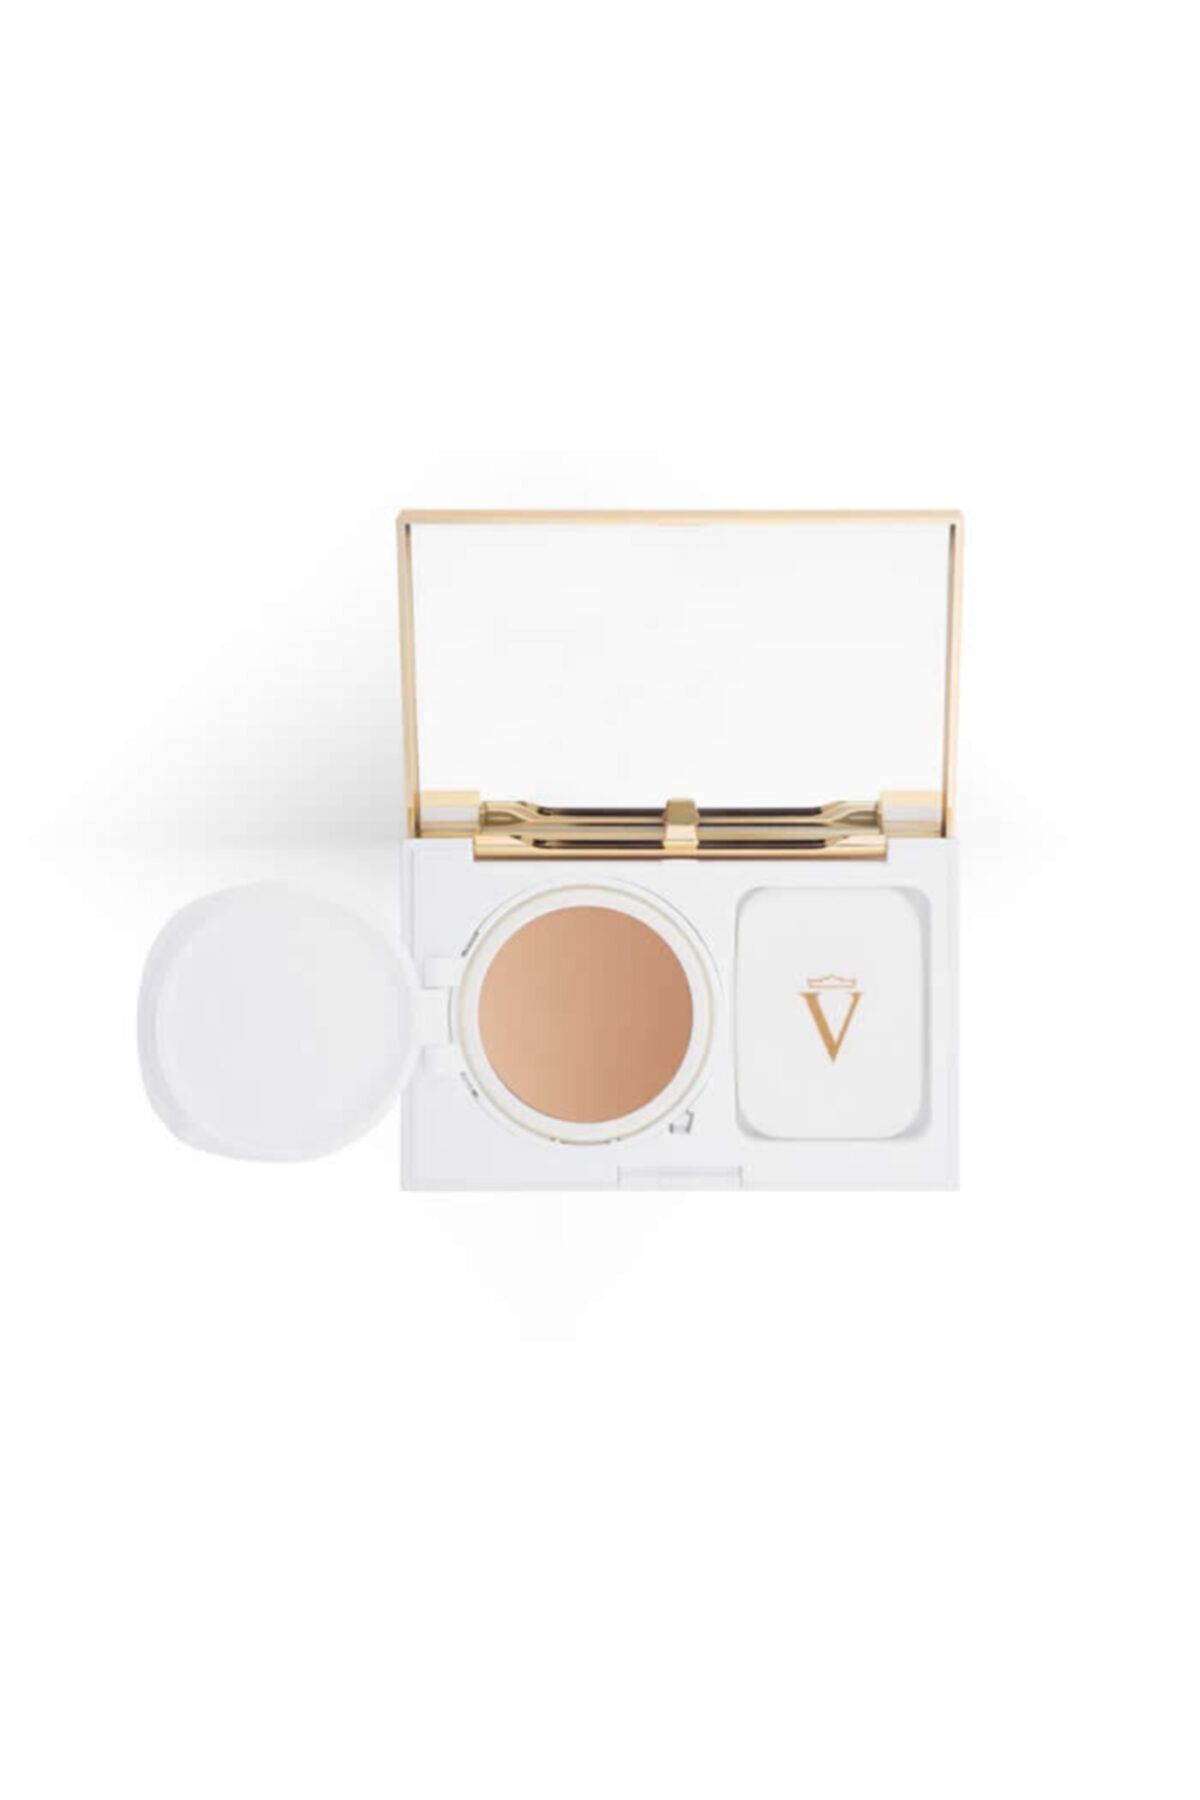 Valmont Perfecting Powder Cream – Medium Beige